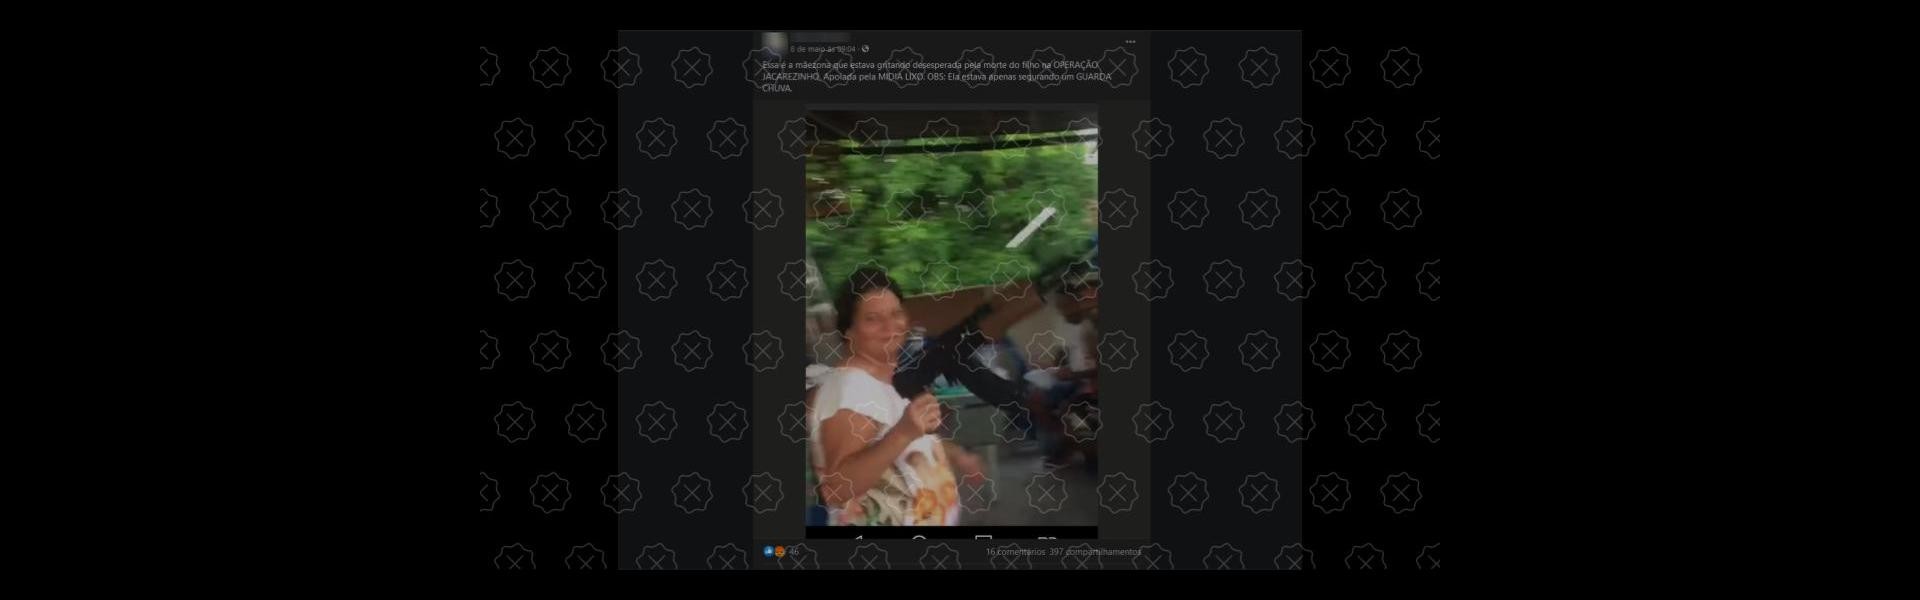 É falso que mãe de morto no Jacarezinho aparece em vídeo segurando fuzil